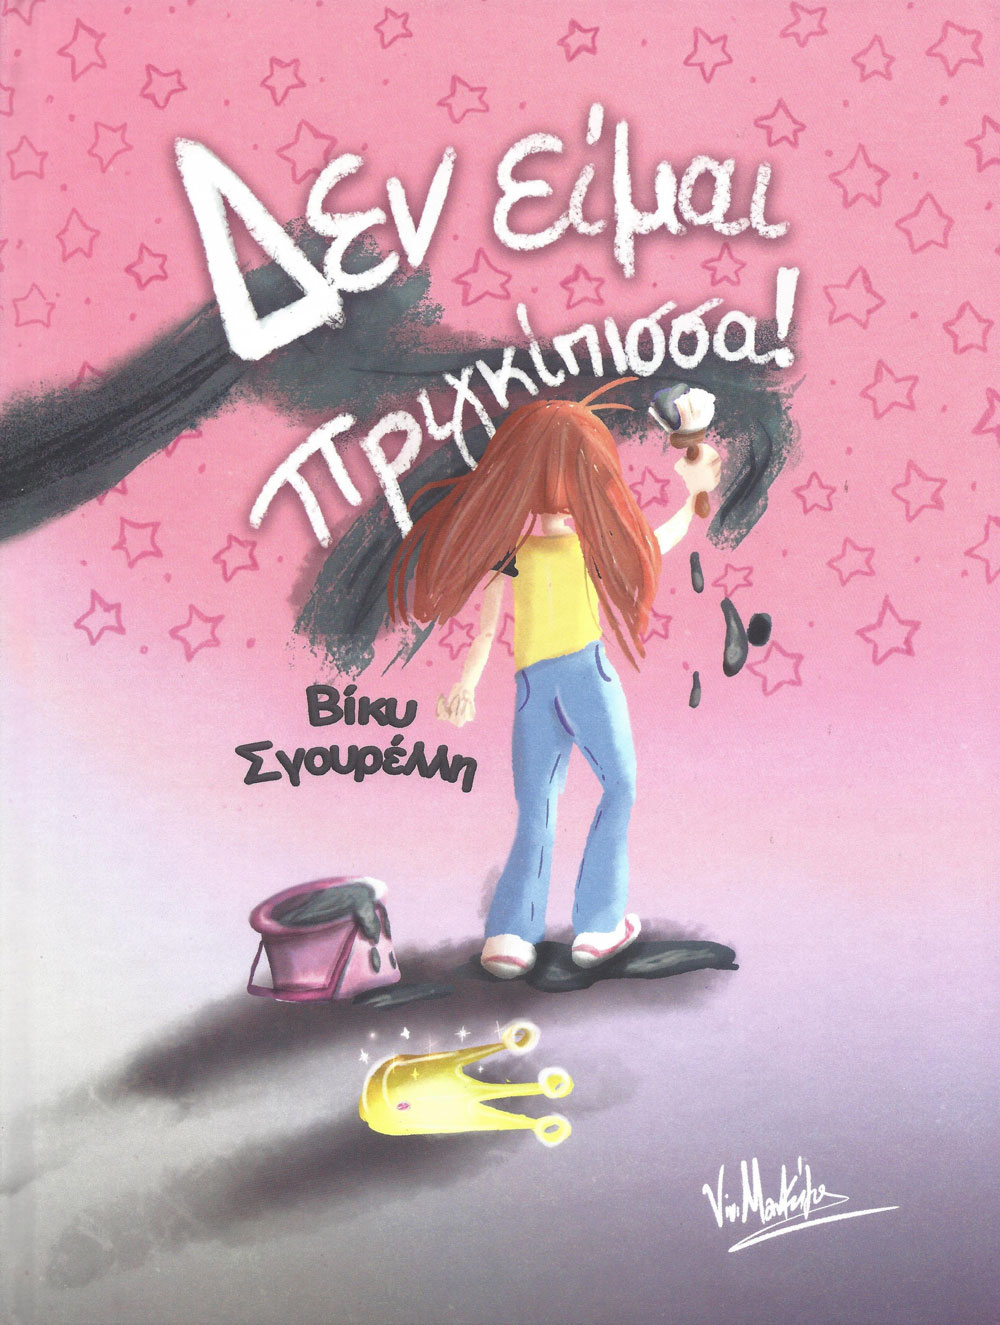 «Δεν είμαι πριγκίπισσα!»: Μόλις κυκλοφόρησε το ανατρεπτικό βιβλίο για παιδιά της Βίκυς Σγουρέλλη